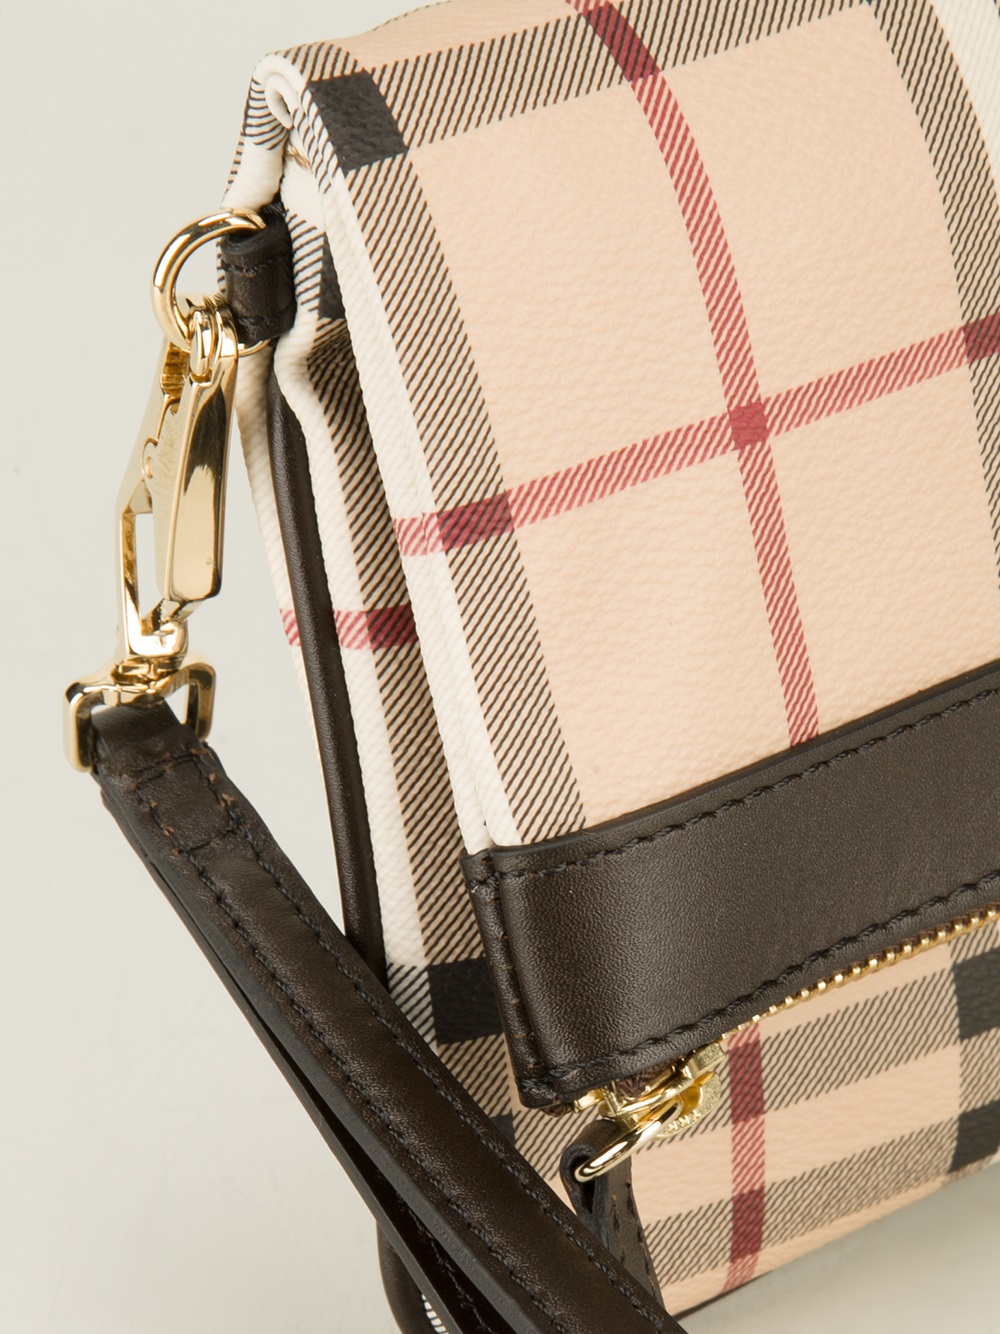 Burberry Sling Vintage Check Shoulder Bag - Neutrals